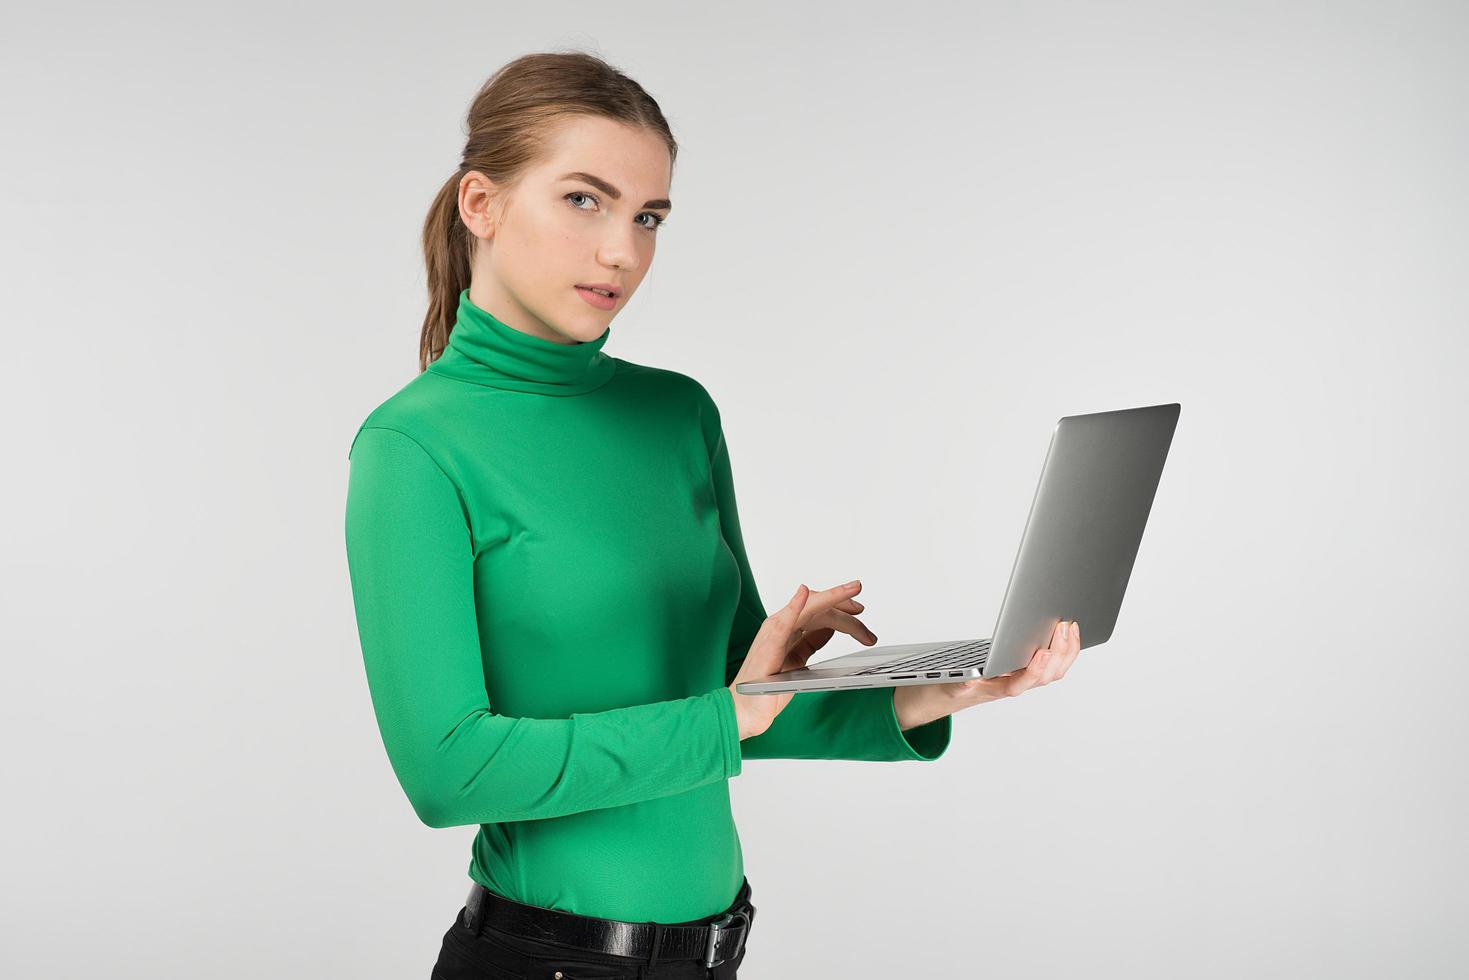 vrouw in halve draai werkt op een laptop die hem in haar handen houdt terwijl ze tegen de witte achtergrond staat. kijkt naar de camera foto